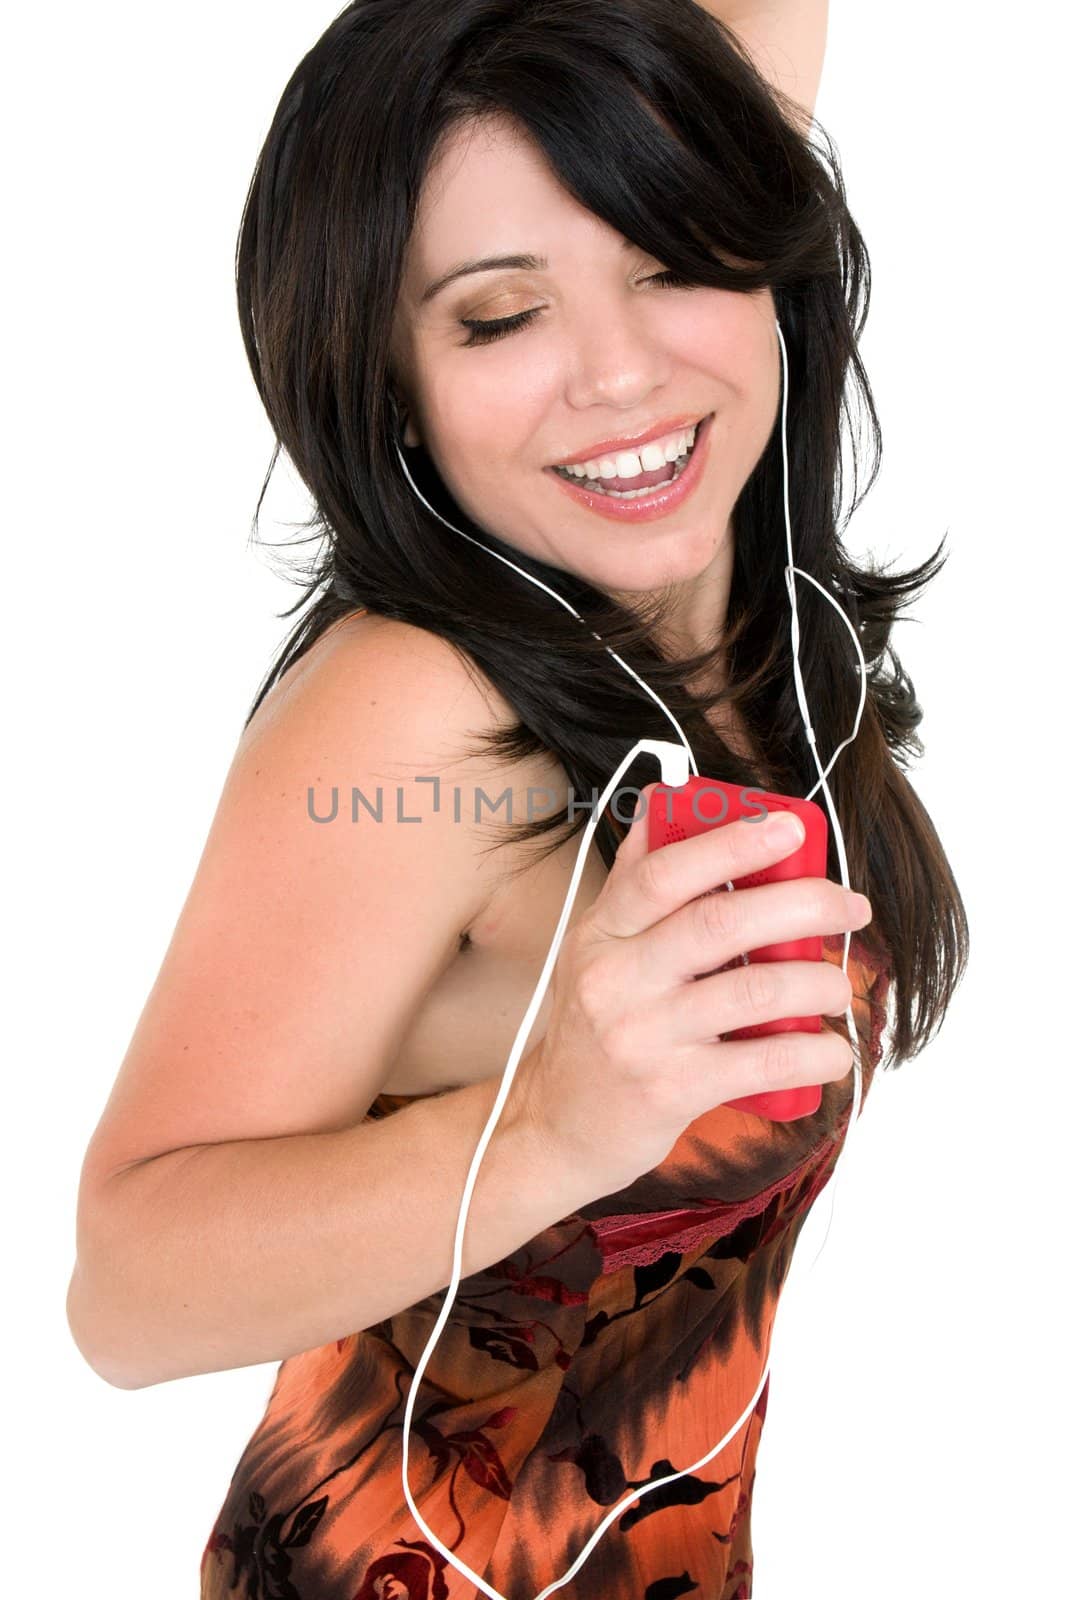 A brunette woman enjoying music